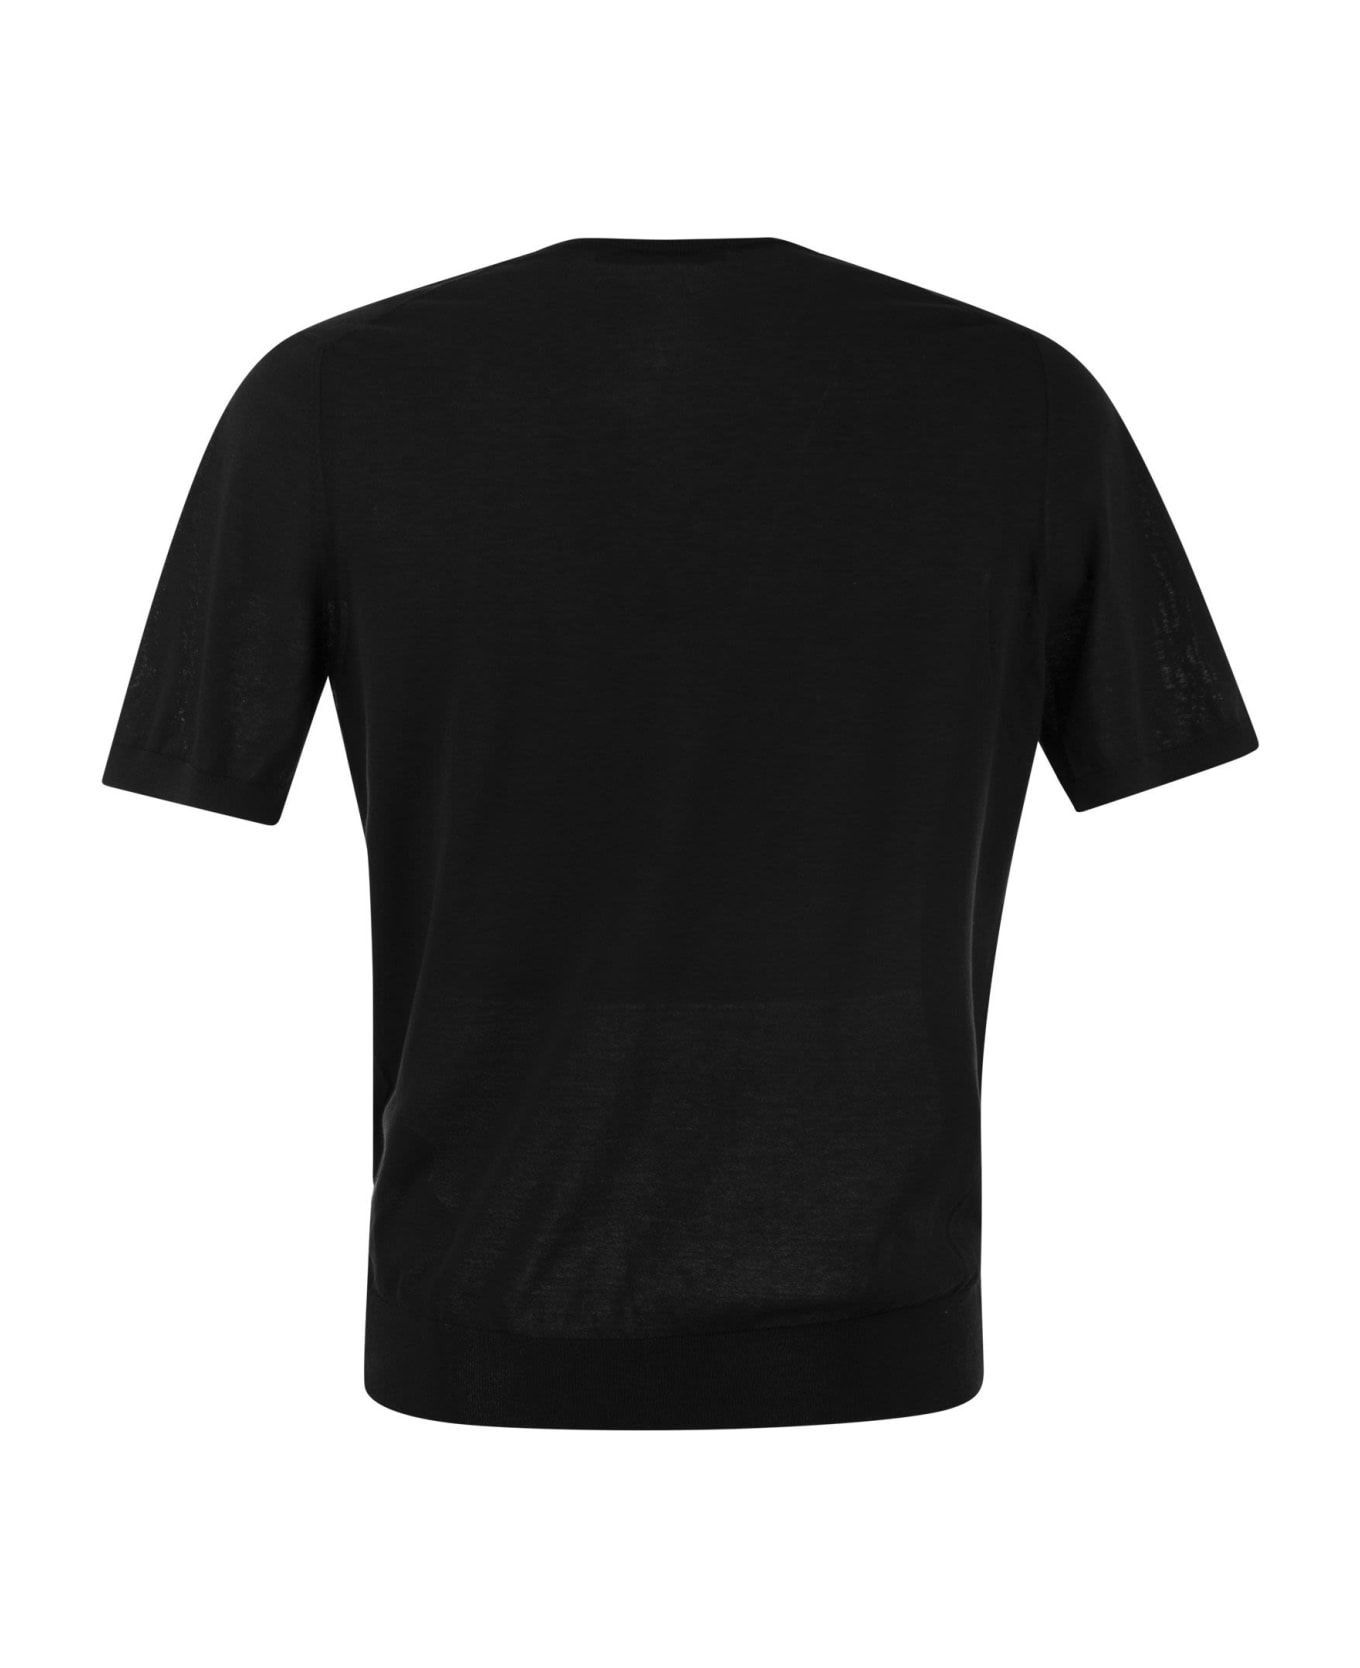 Tagliatore T-shirt In Cotton Fabric - Black シャツ